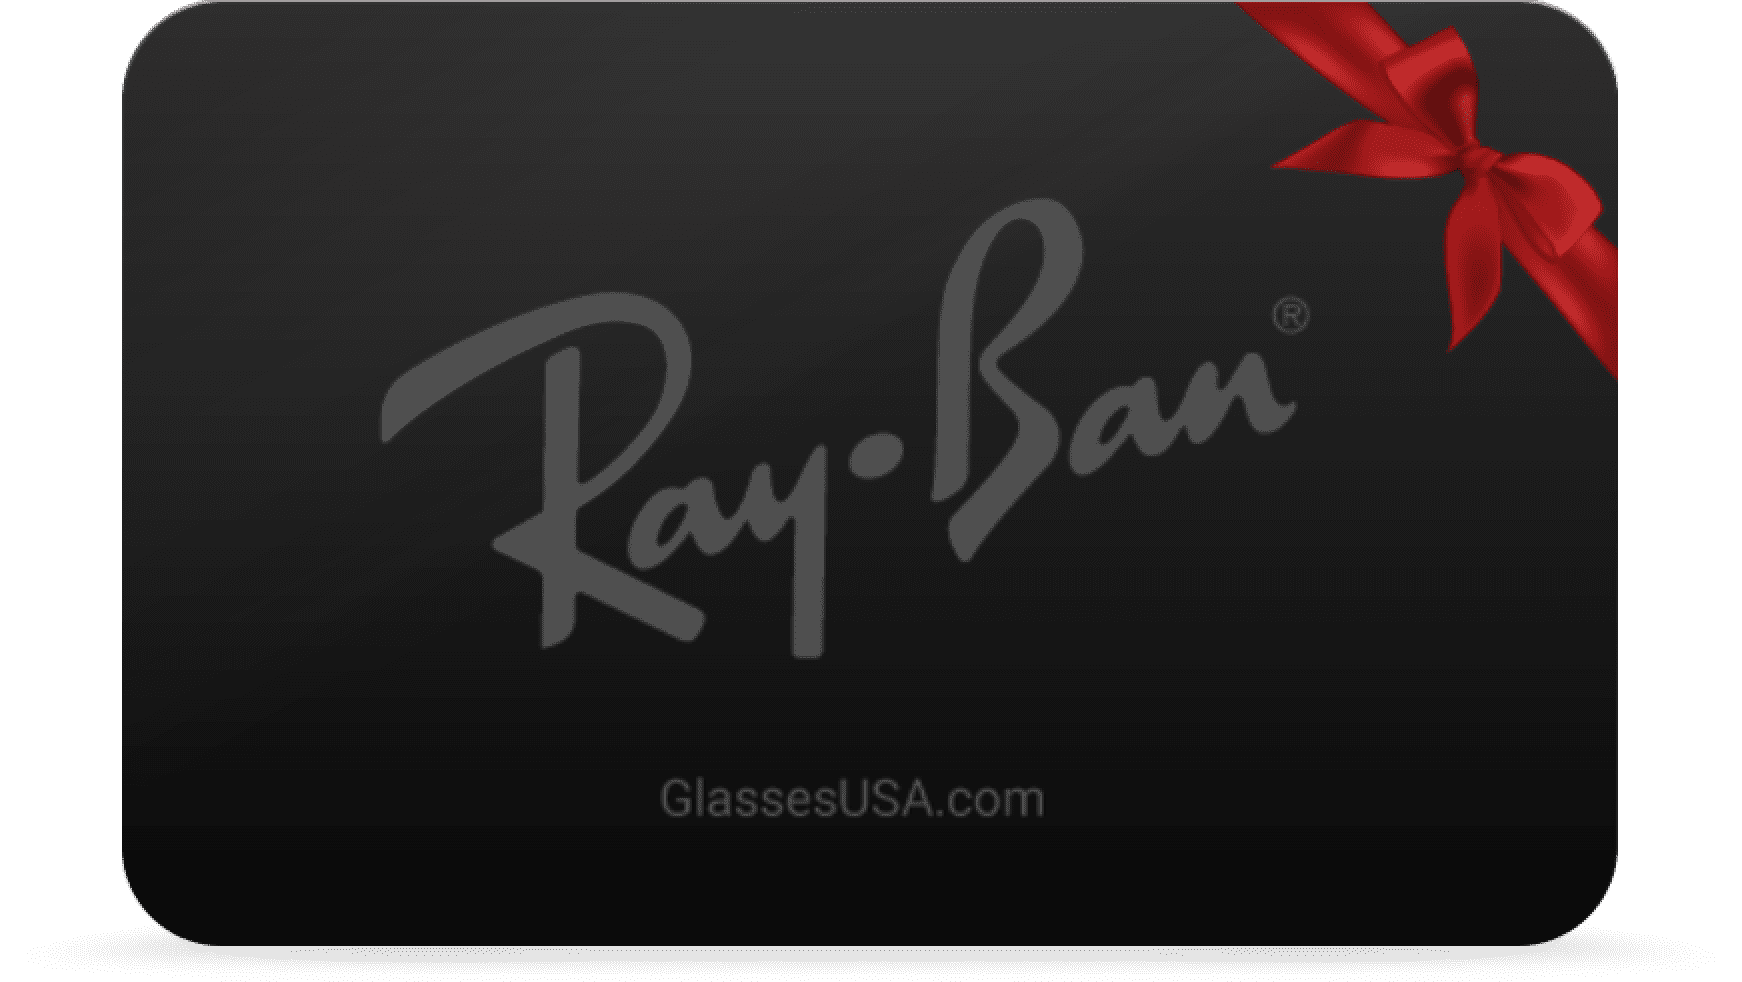 ray ban gift card